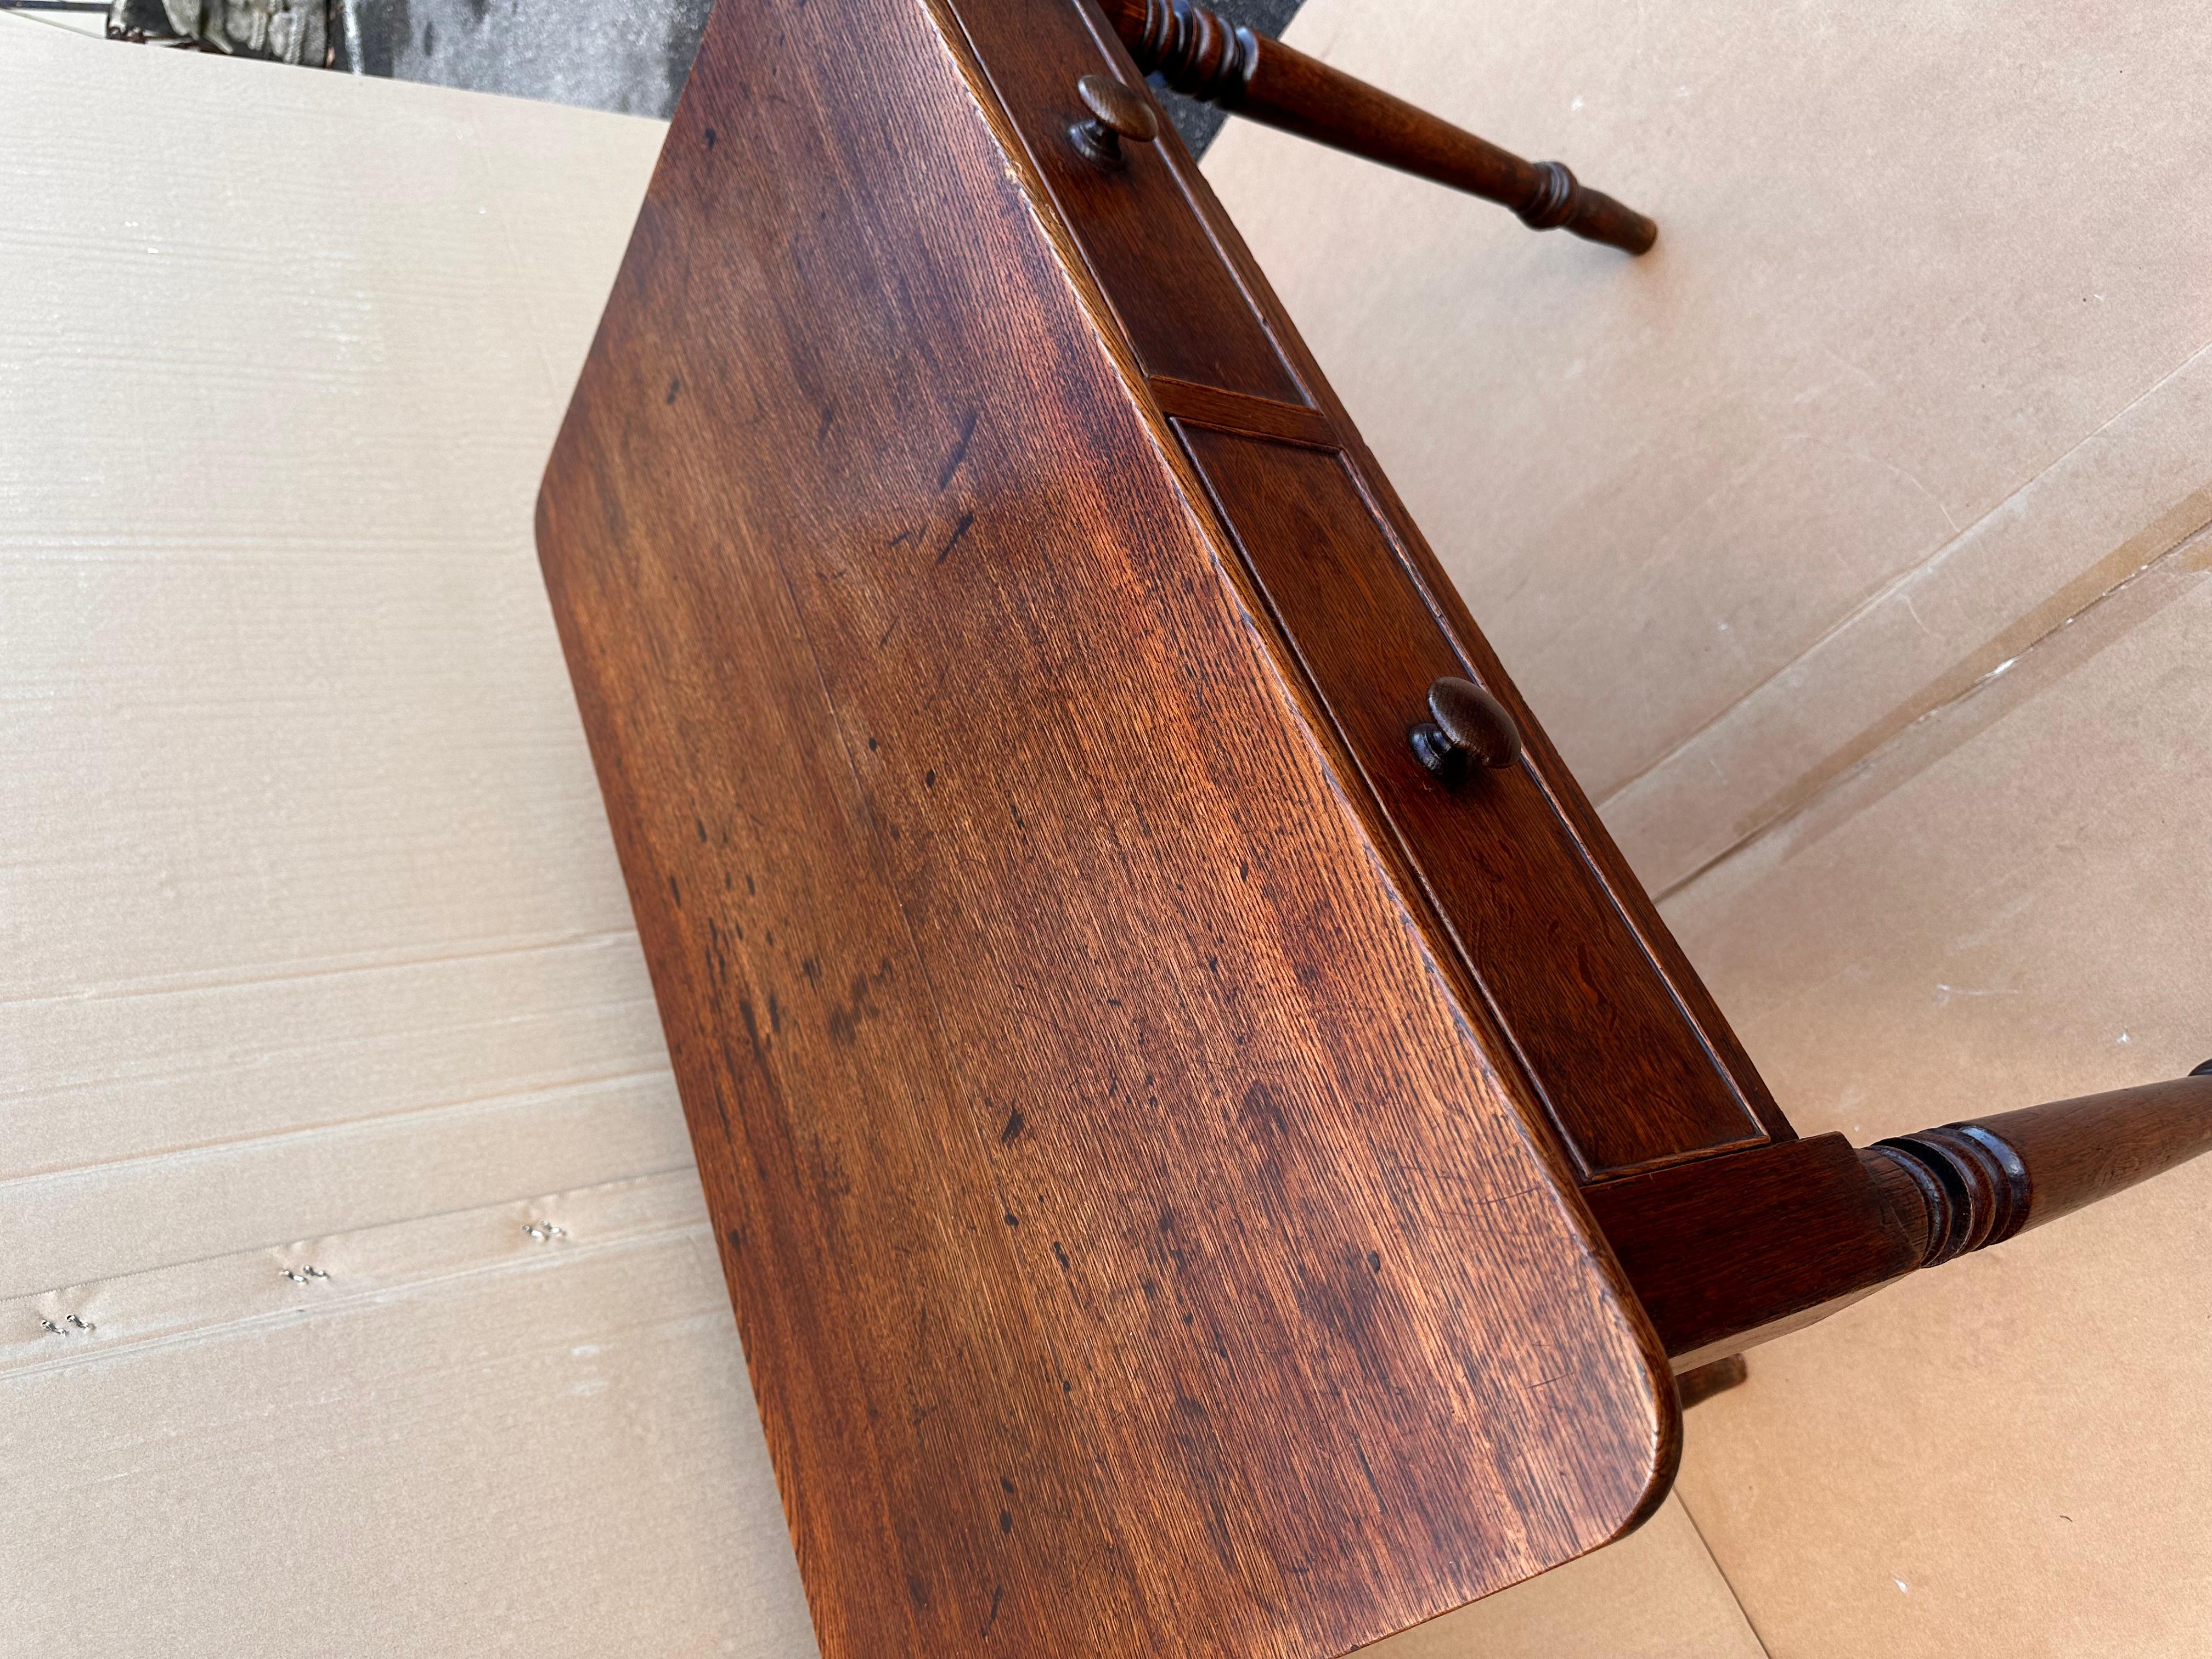 Il s'agit d'une magnifique petite table d'appoint anglaise ! La patine et l'éclat sont magnifiques et le bois est d'une teinte riche et foncée. Les pieds tournés ajoutent la touche d'embellissement parfaite. La taille et le style de cette pièce en